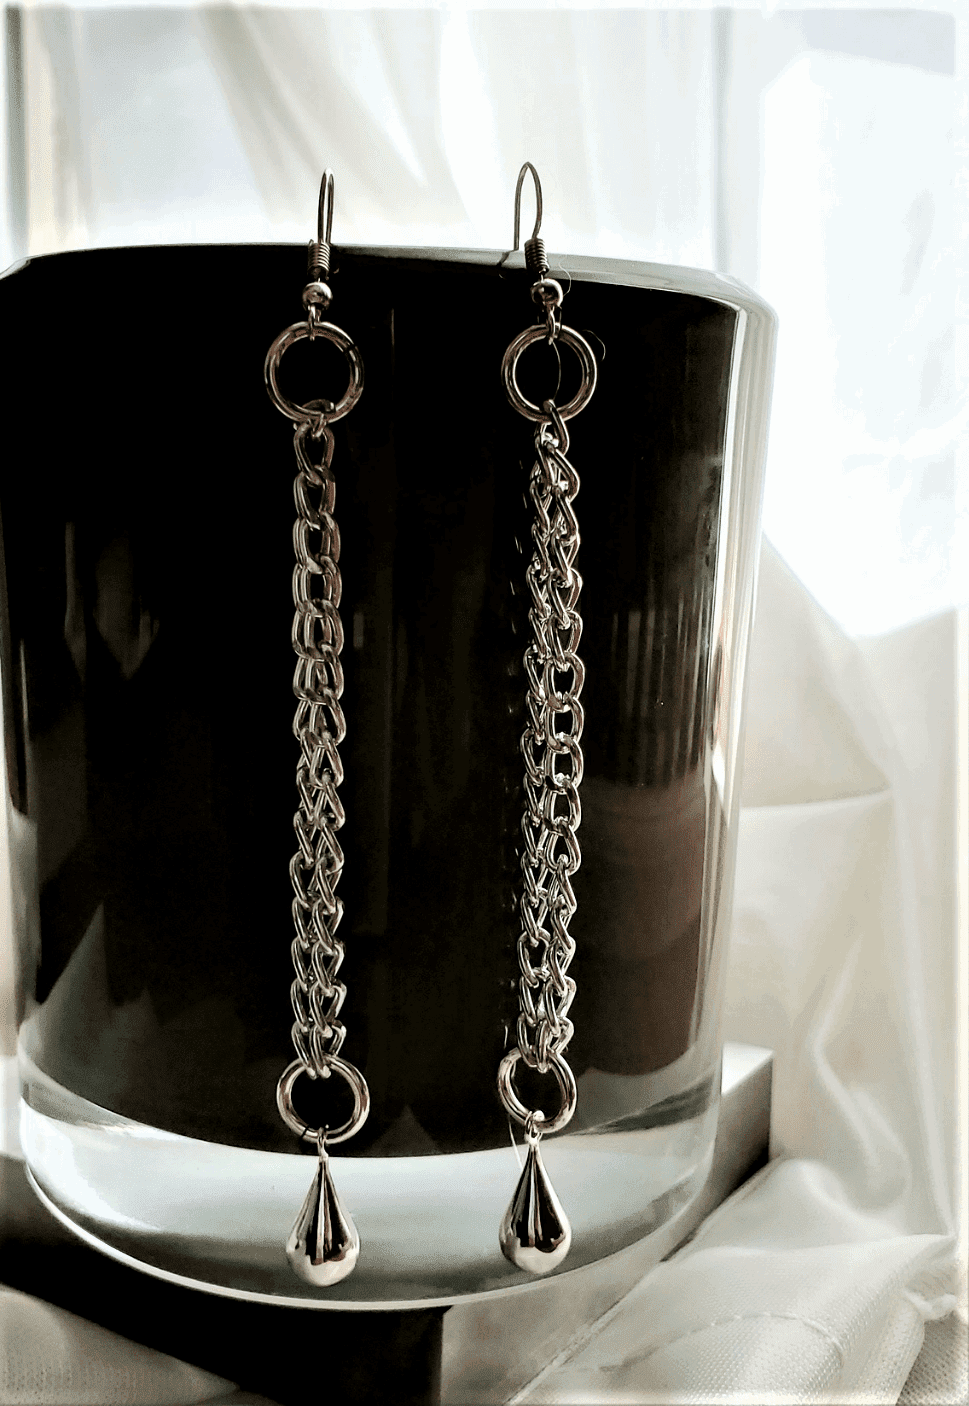 Earrings for women, Chain Teardrop Earrings, earrings dangling from candle